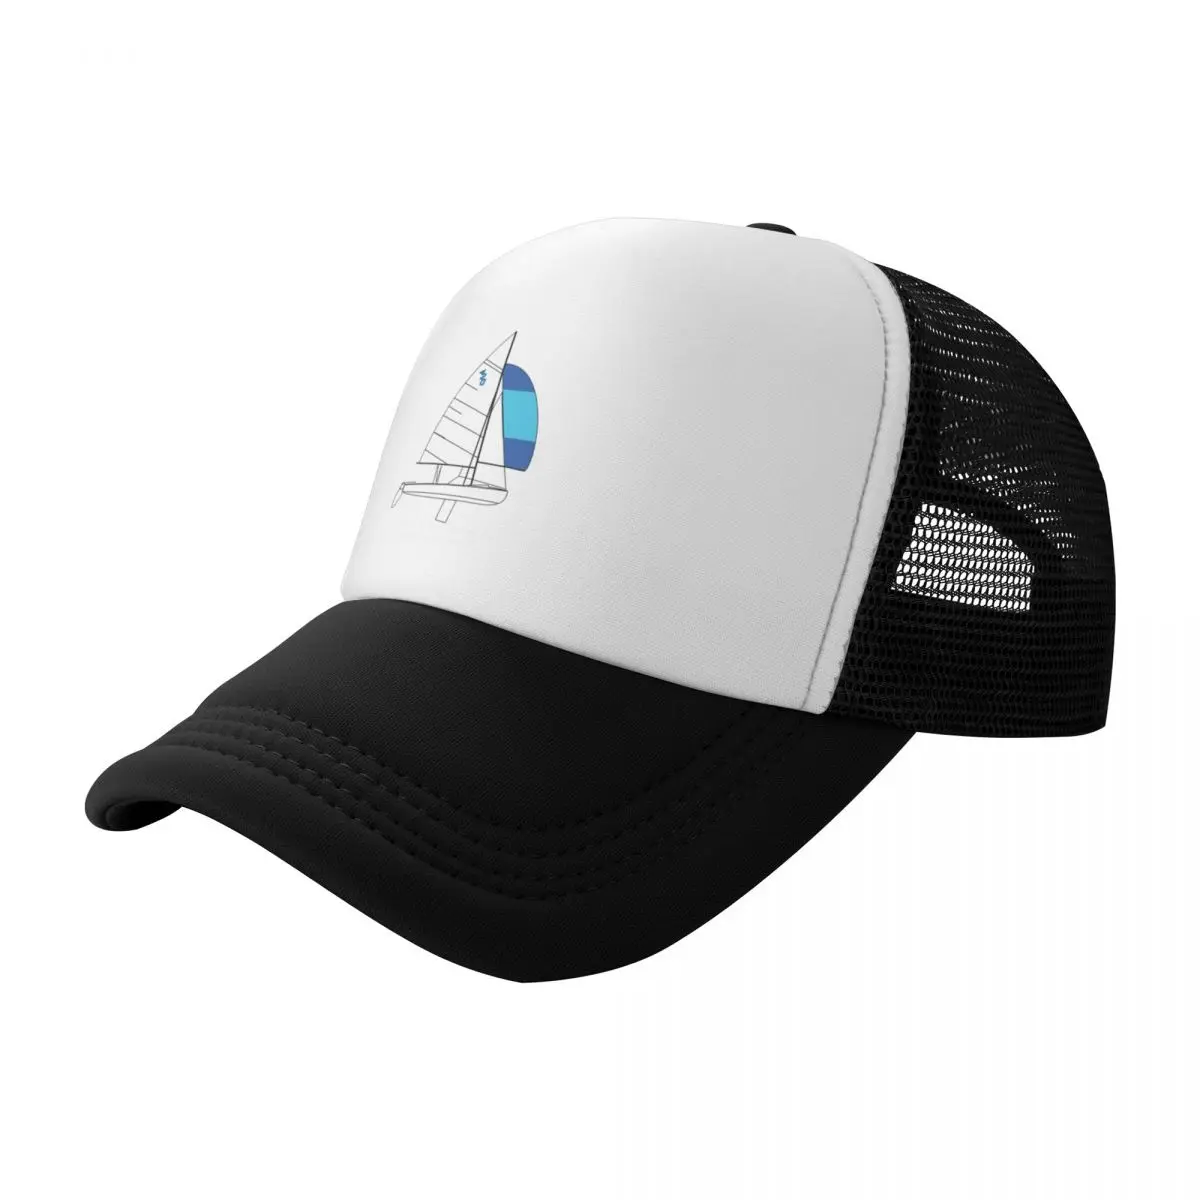 הבינלאומי 420 - החיים טובים יותר הפלגה בינלאומית 420 כובע בייסבול כובע חדש כובעי נשים החוף של כובע לגברים